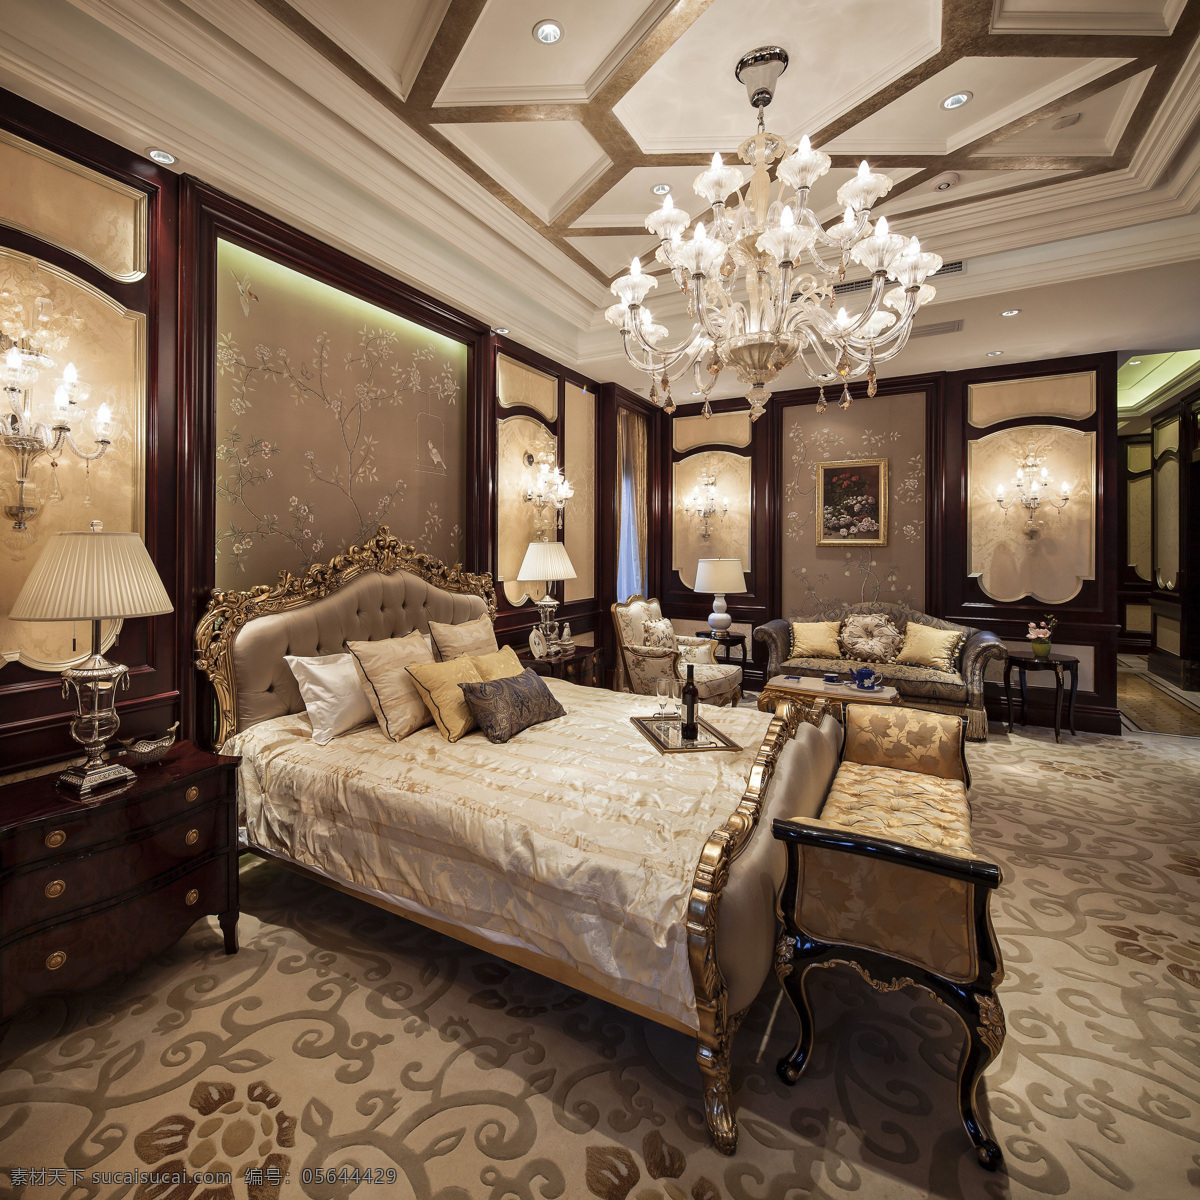 室内 卧室 欧式 复古 花纹 壁纸 豪华 装修 效果图 花纹地板 实木床头柜 黄色灯光 欧式大床 华美水晶灯